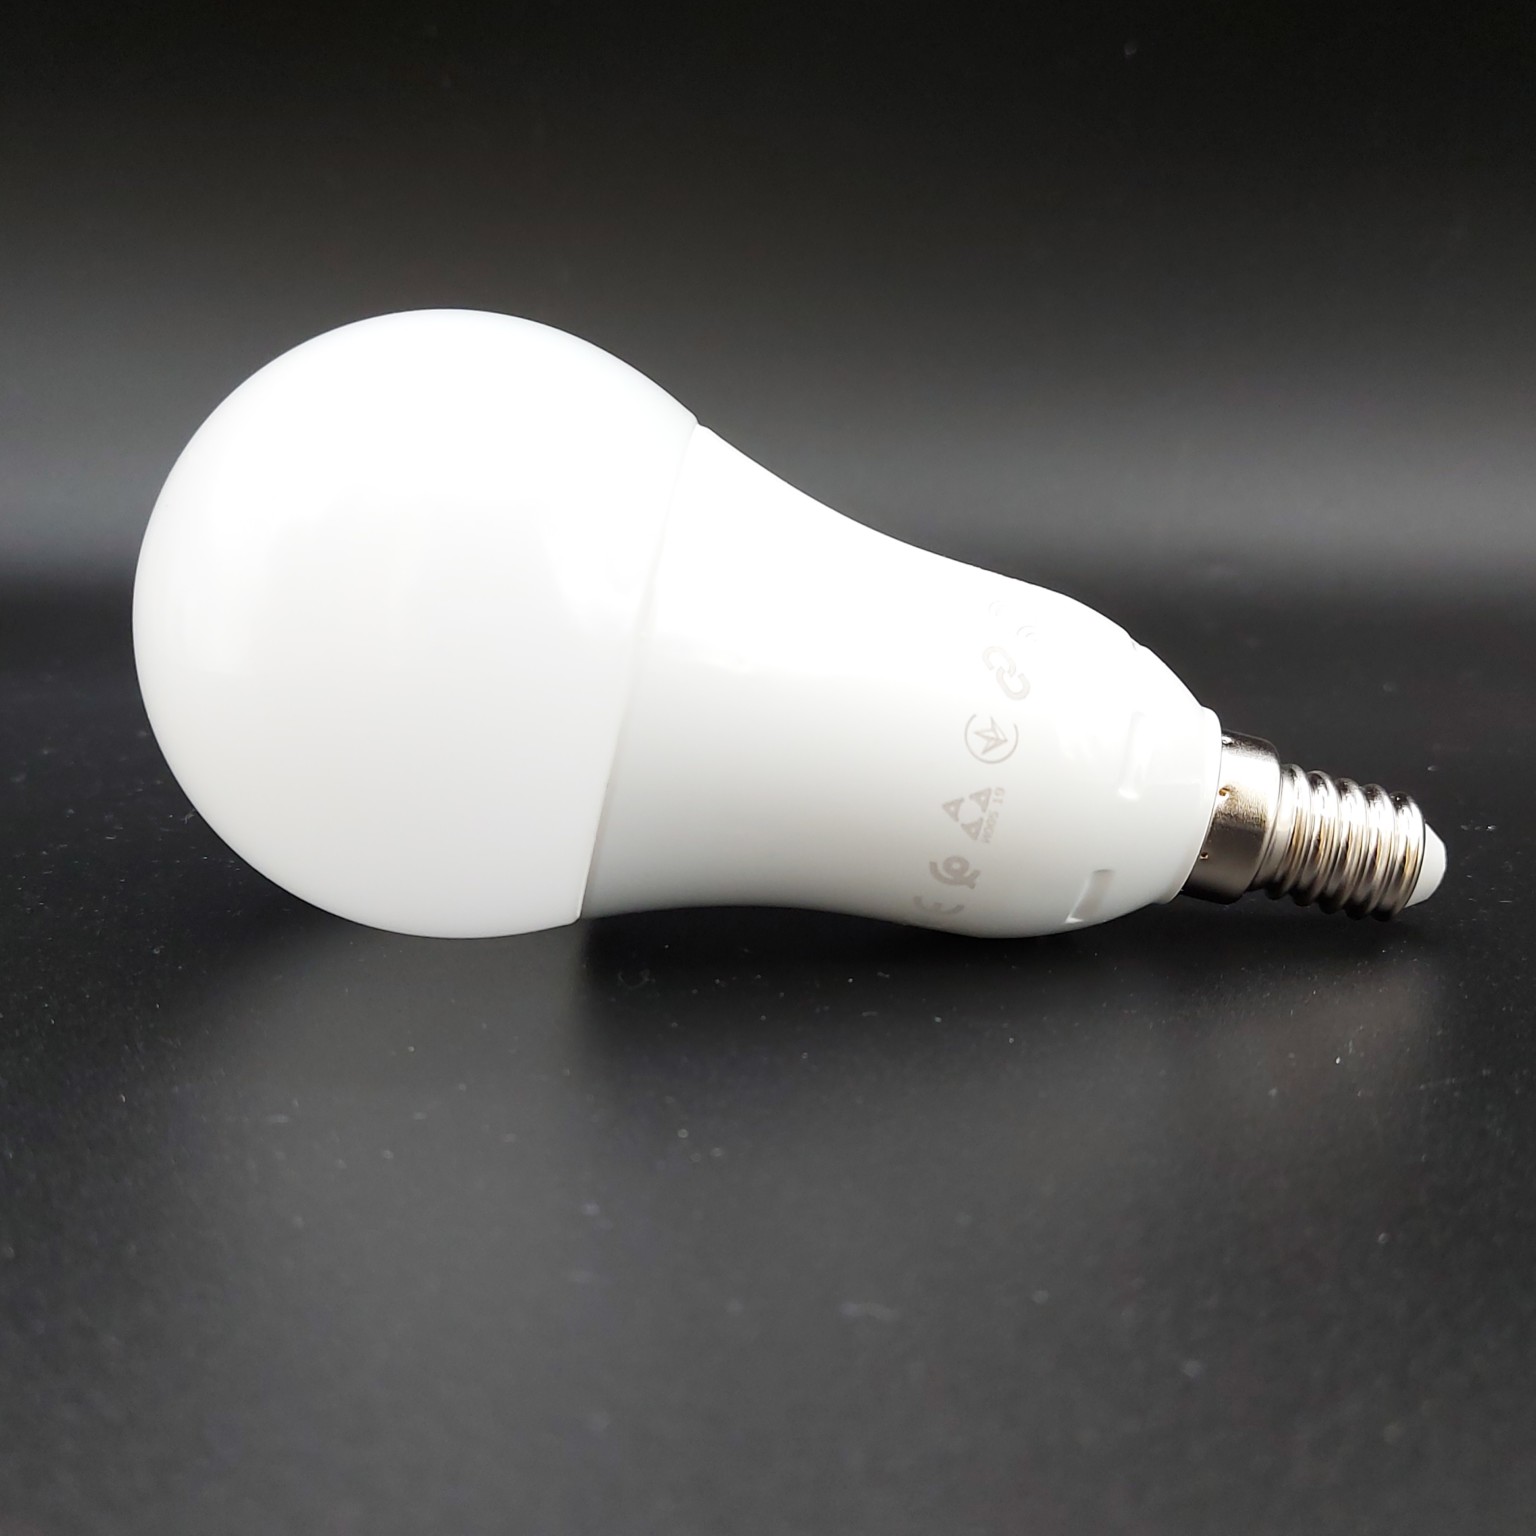 [TEST] IKEA TRÅDFRI LED E14 : l'ampoule ZigBee multicolore de 600 lm